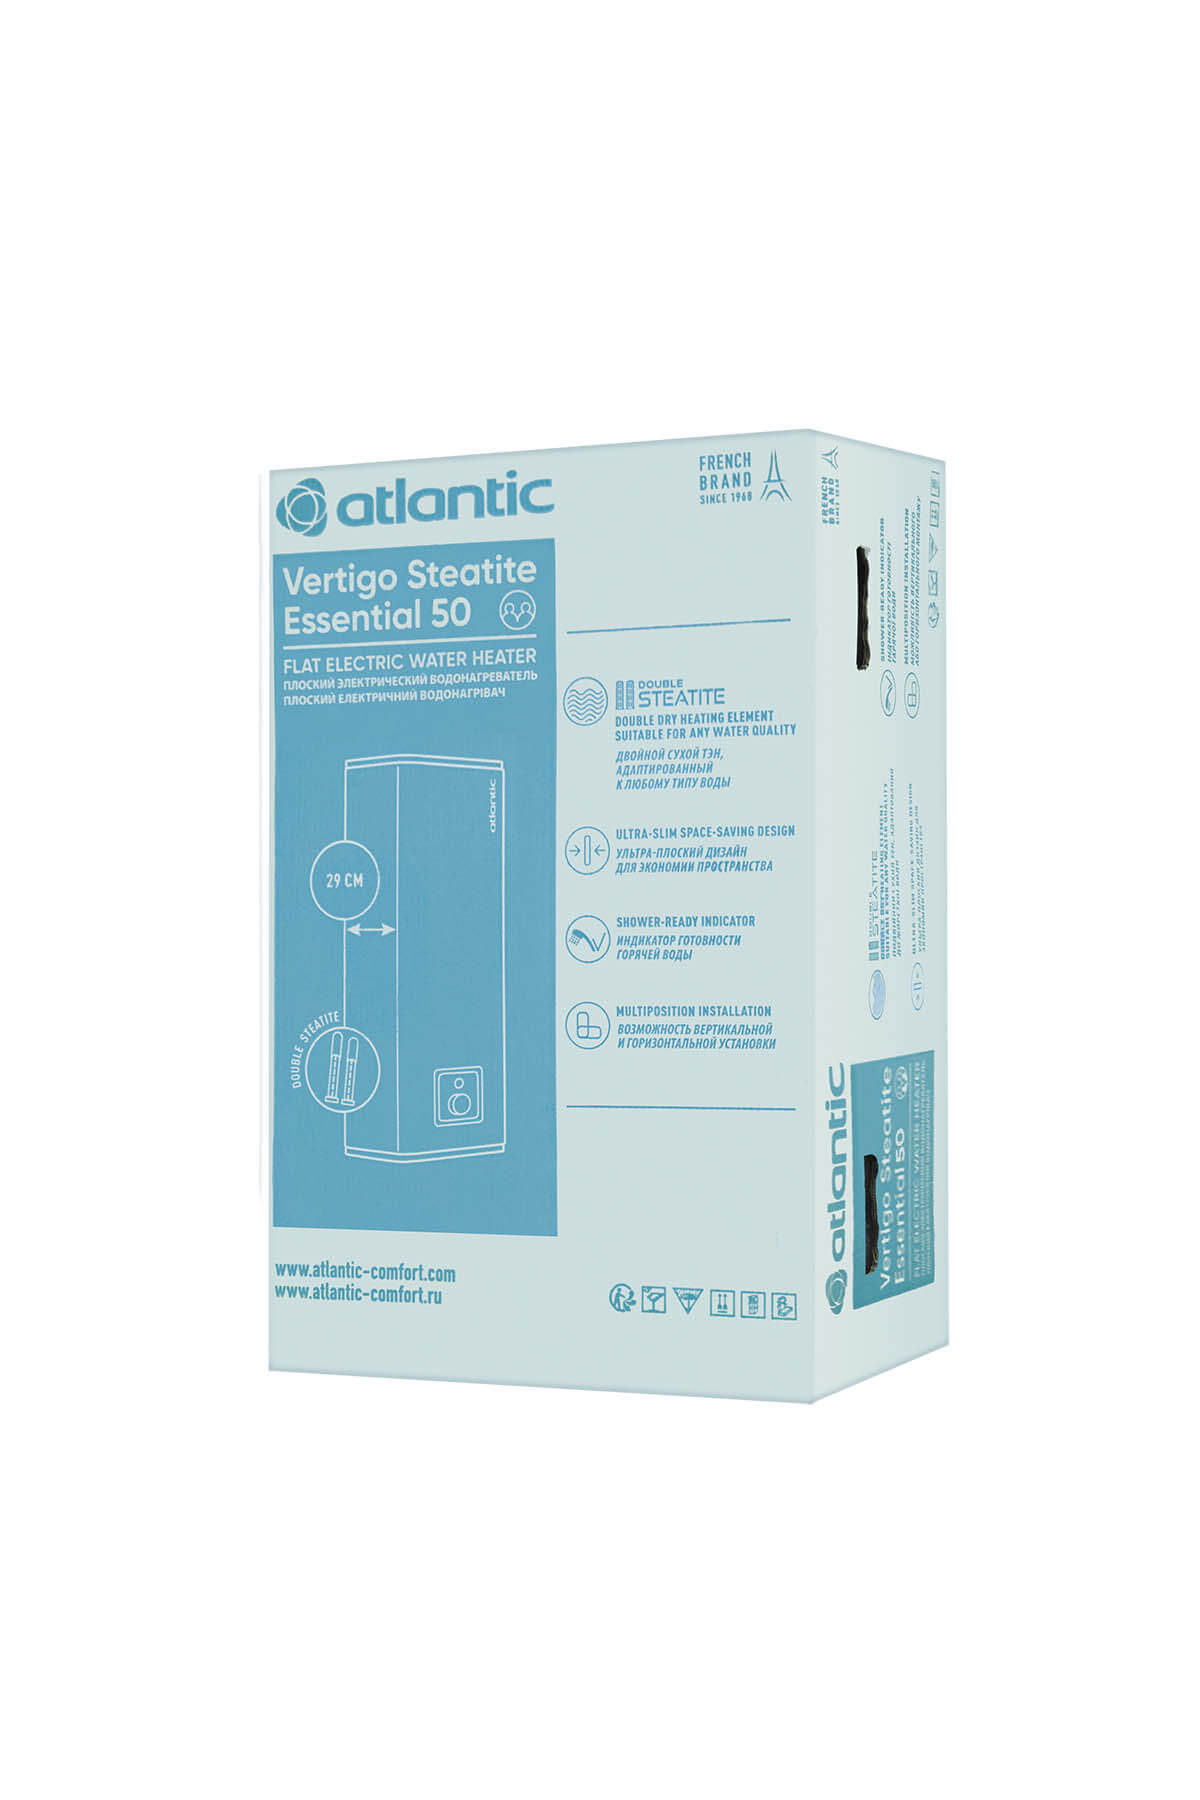 atlantic-vertigo-steatite-essential-50-mp-040-2f5